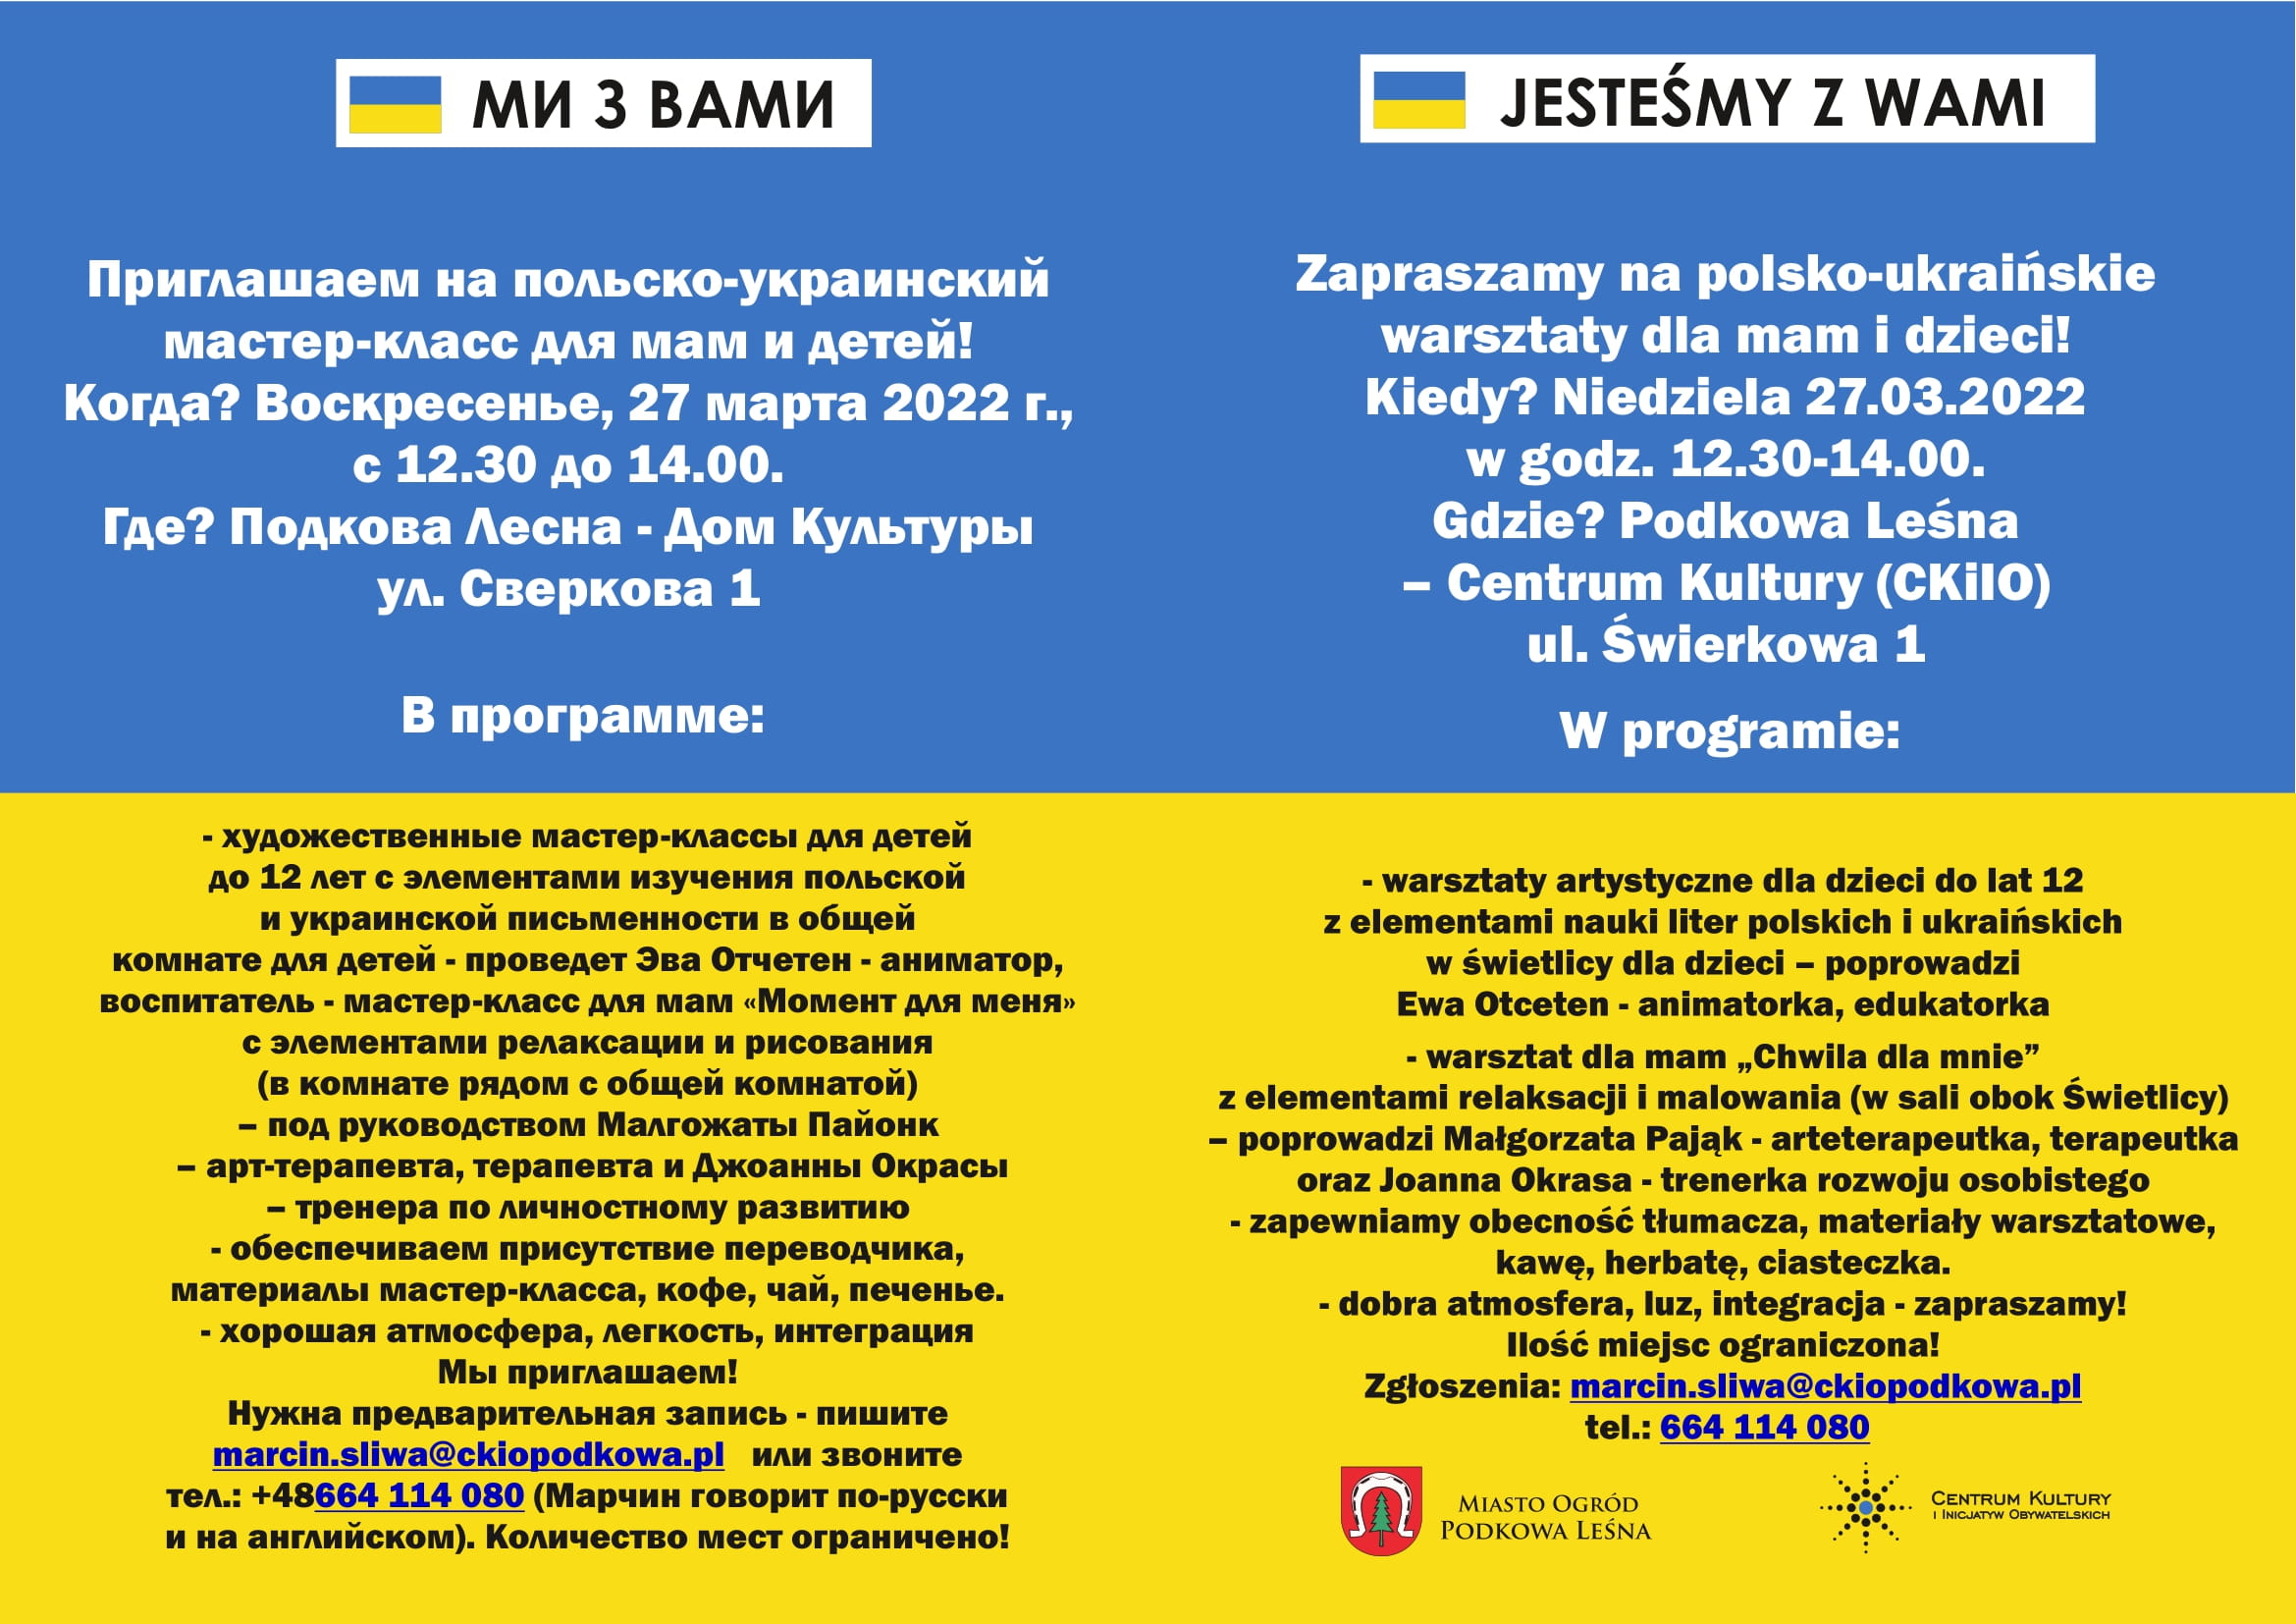 You are currently viewing Jesteśmy z Wami: polsko – ukraińskie warsztaty dla mam i dzieci